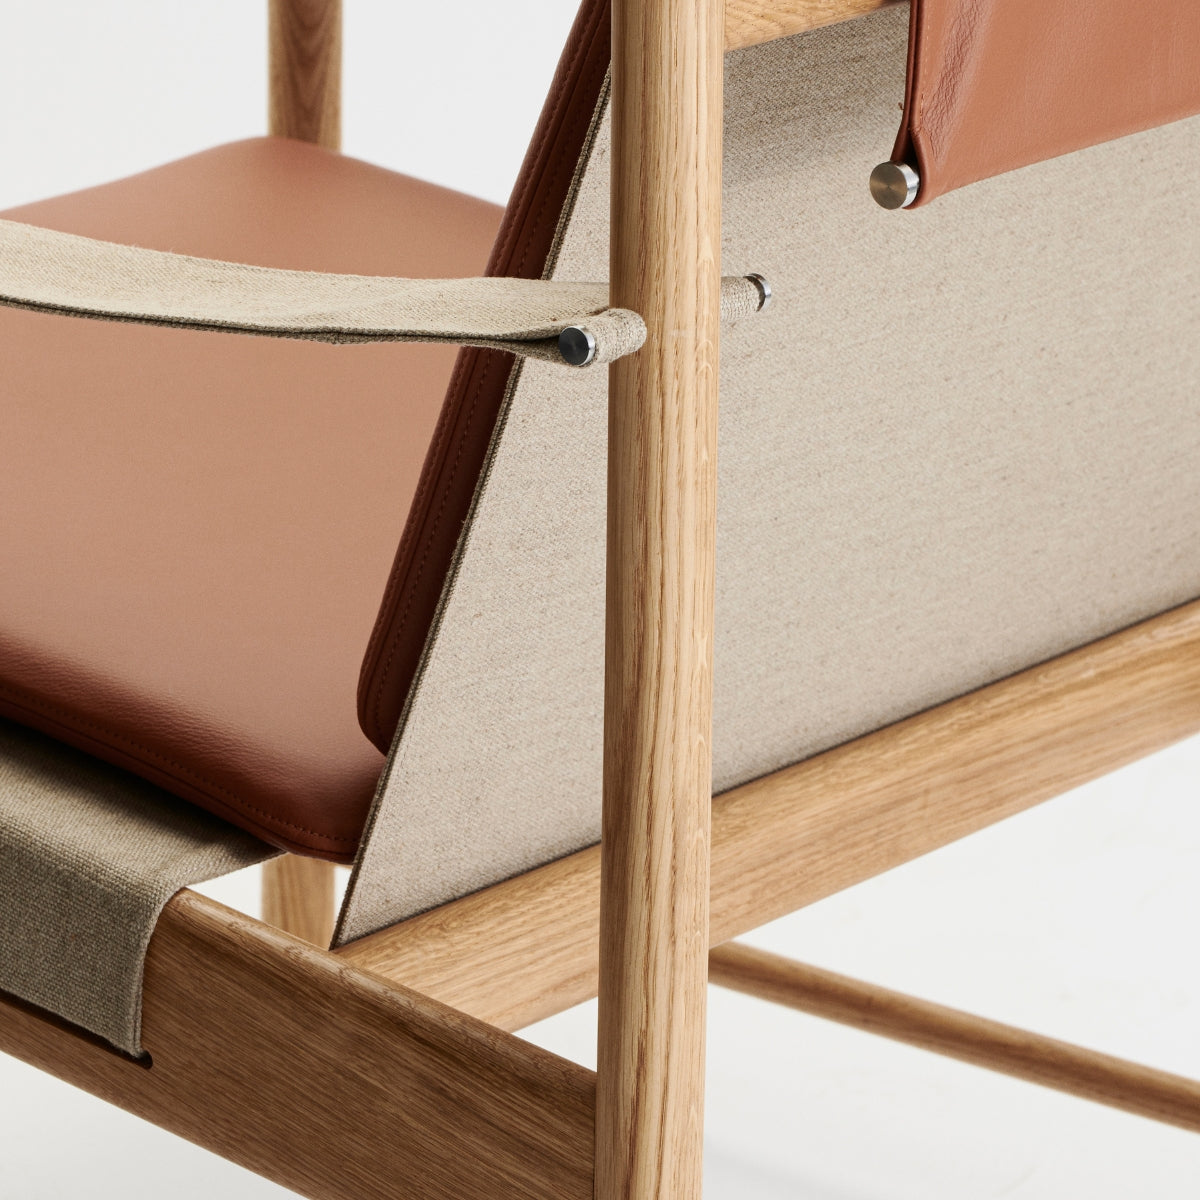 Brdr. Krüger | HB Lounge Chair - Leather - Bolighuset Werenberg